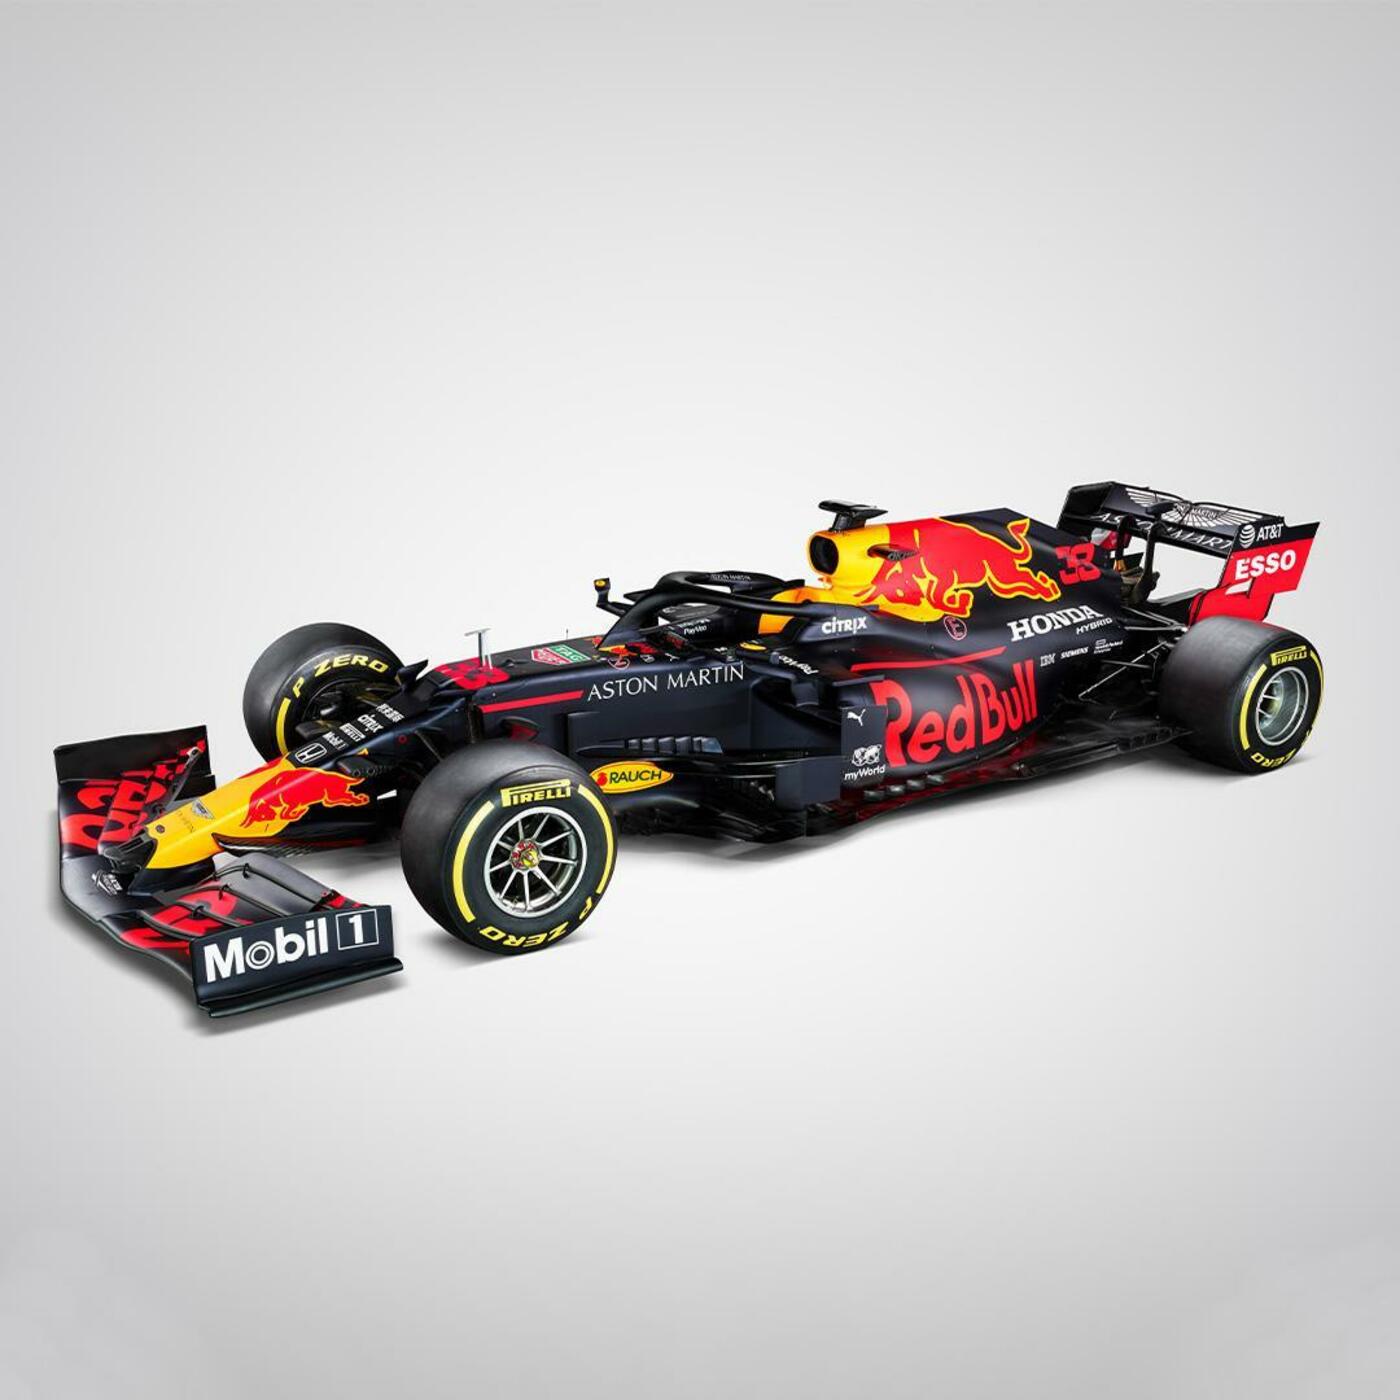 Red Bull presenta su nuevo monoplaza para 2020: el RB16 0938253